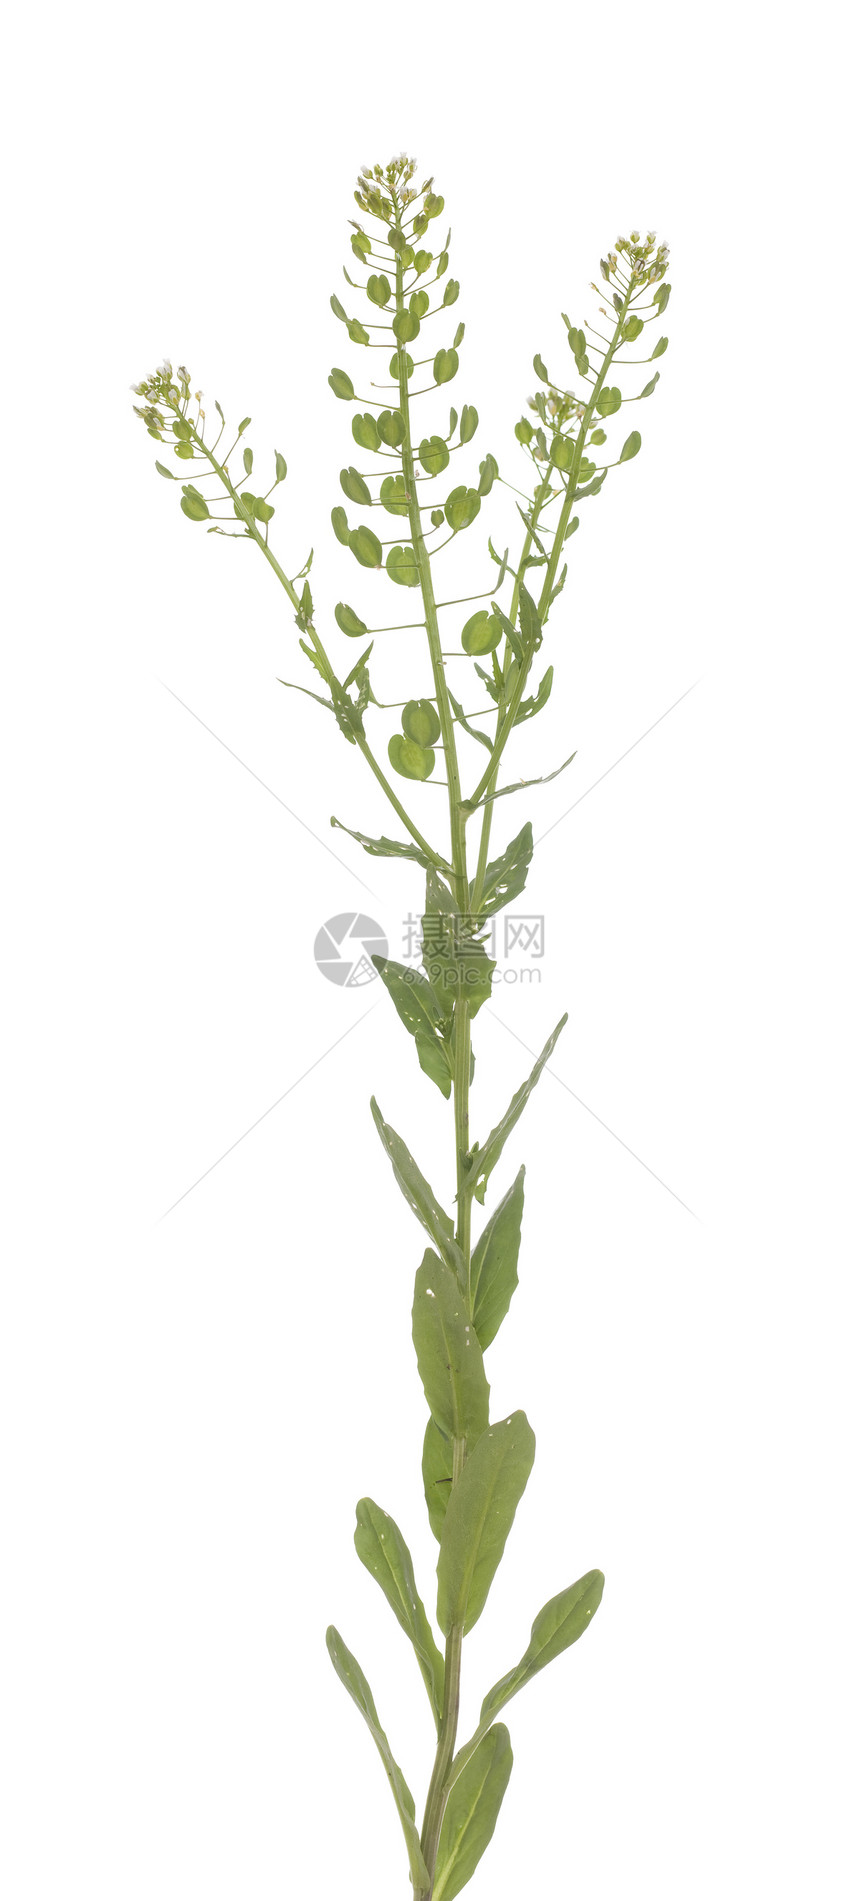 Tlaspi 静脉喷发草本植物种子白色宏观叶子植物植物群野花图片